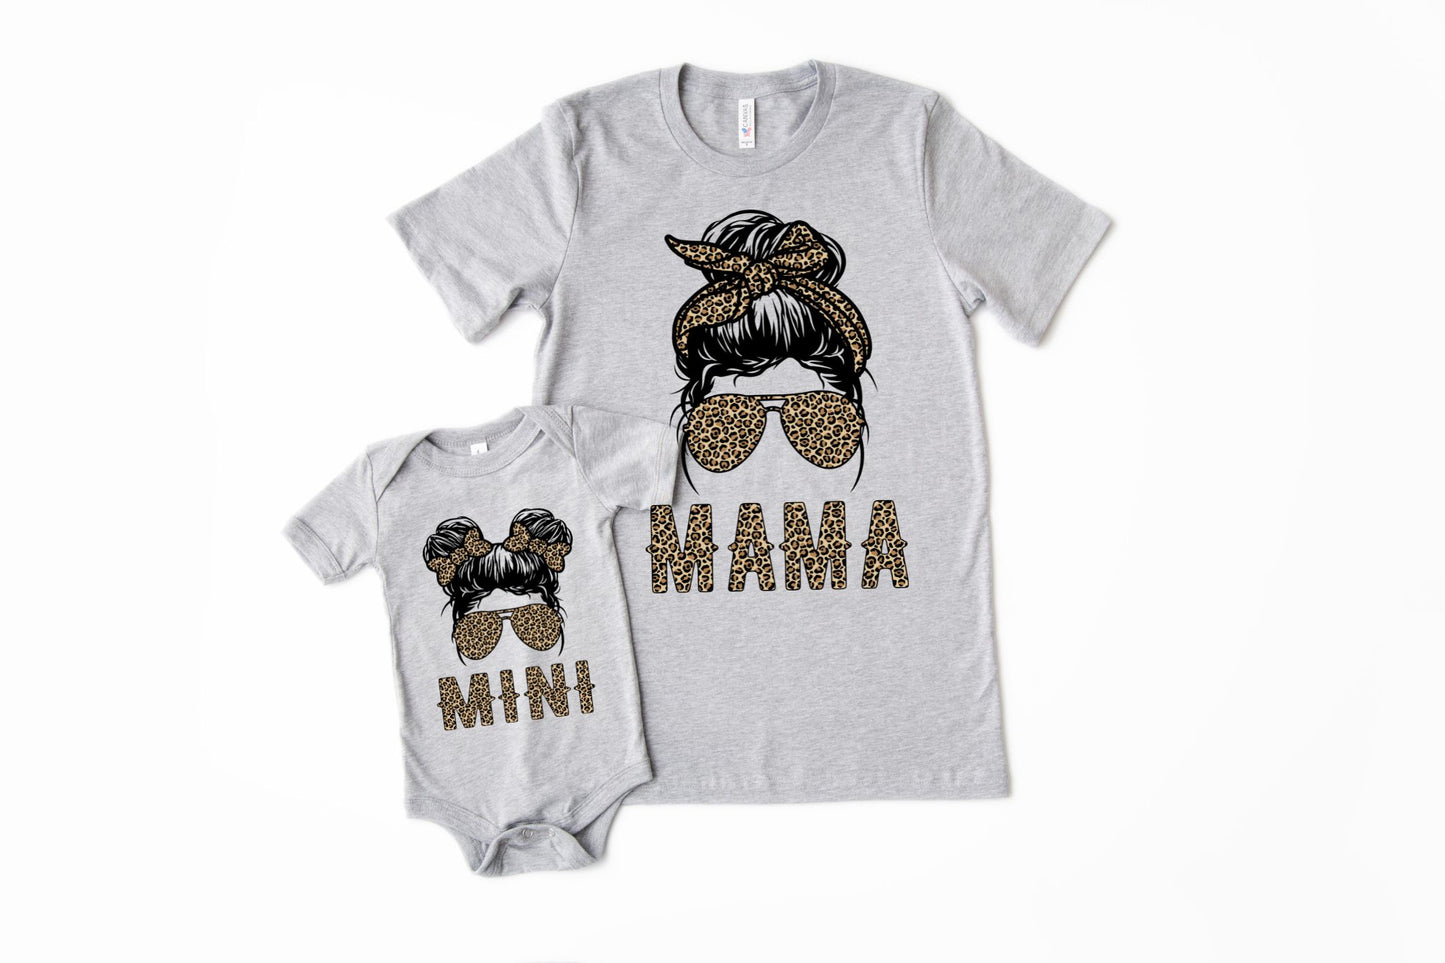 Mama and Mini Matching Leopard Shirt Set